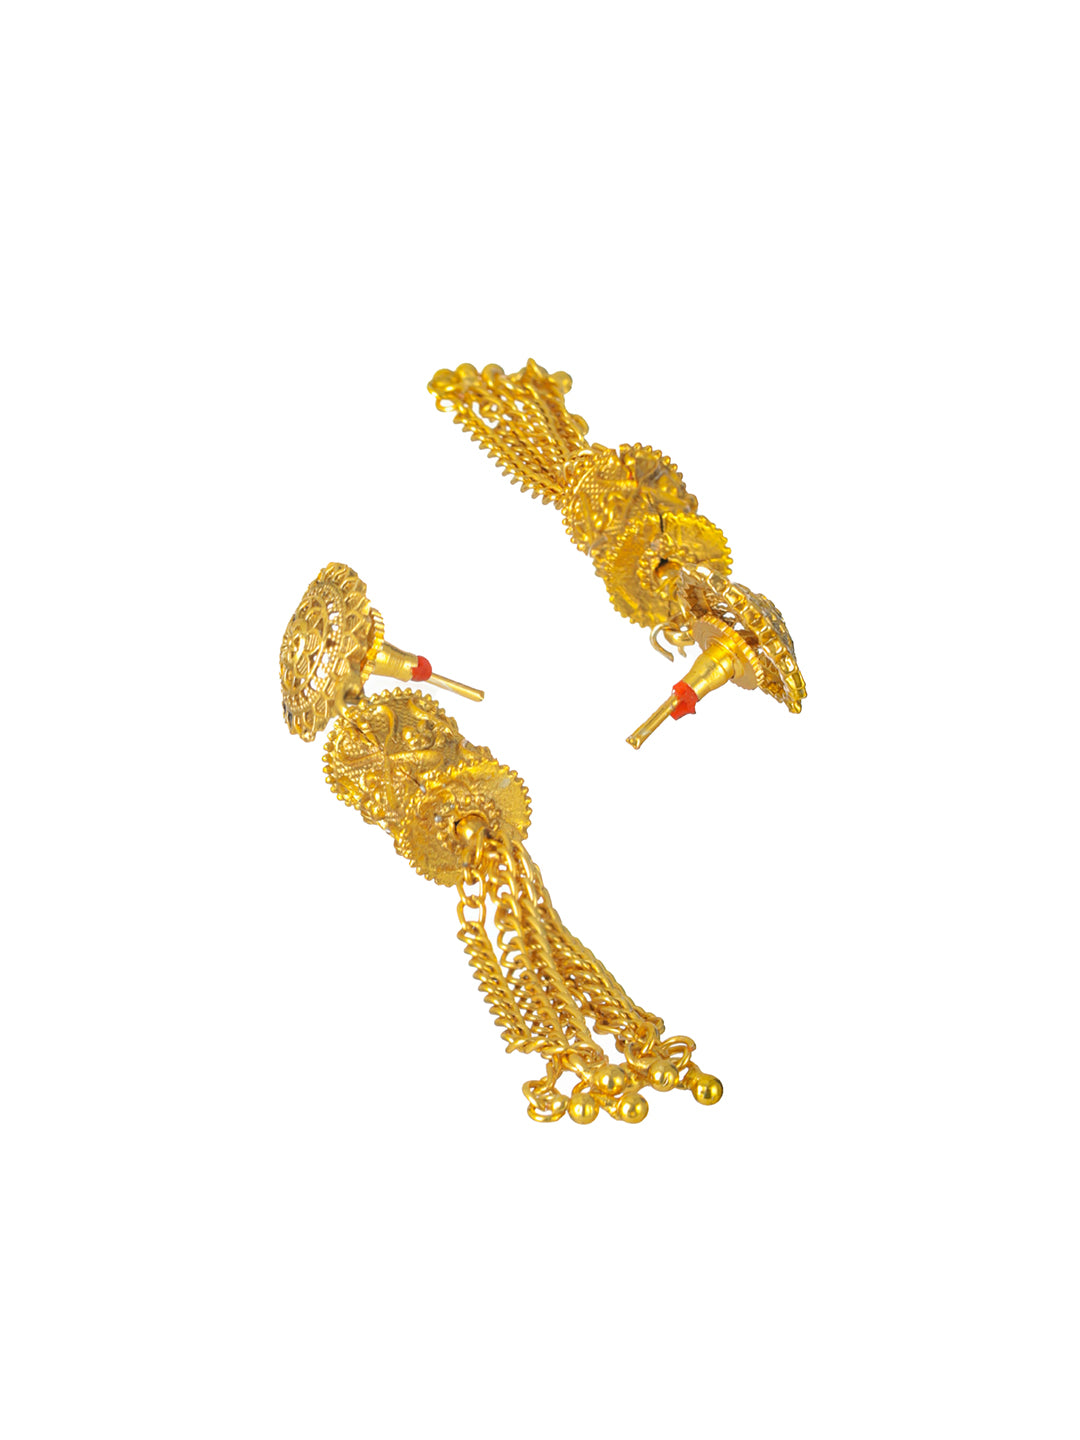 Priyaasi Engraved Spheres Floral Gold-Plated Jewellery Set